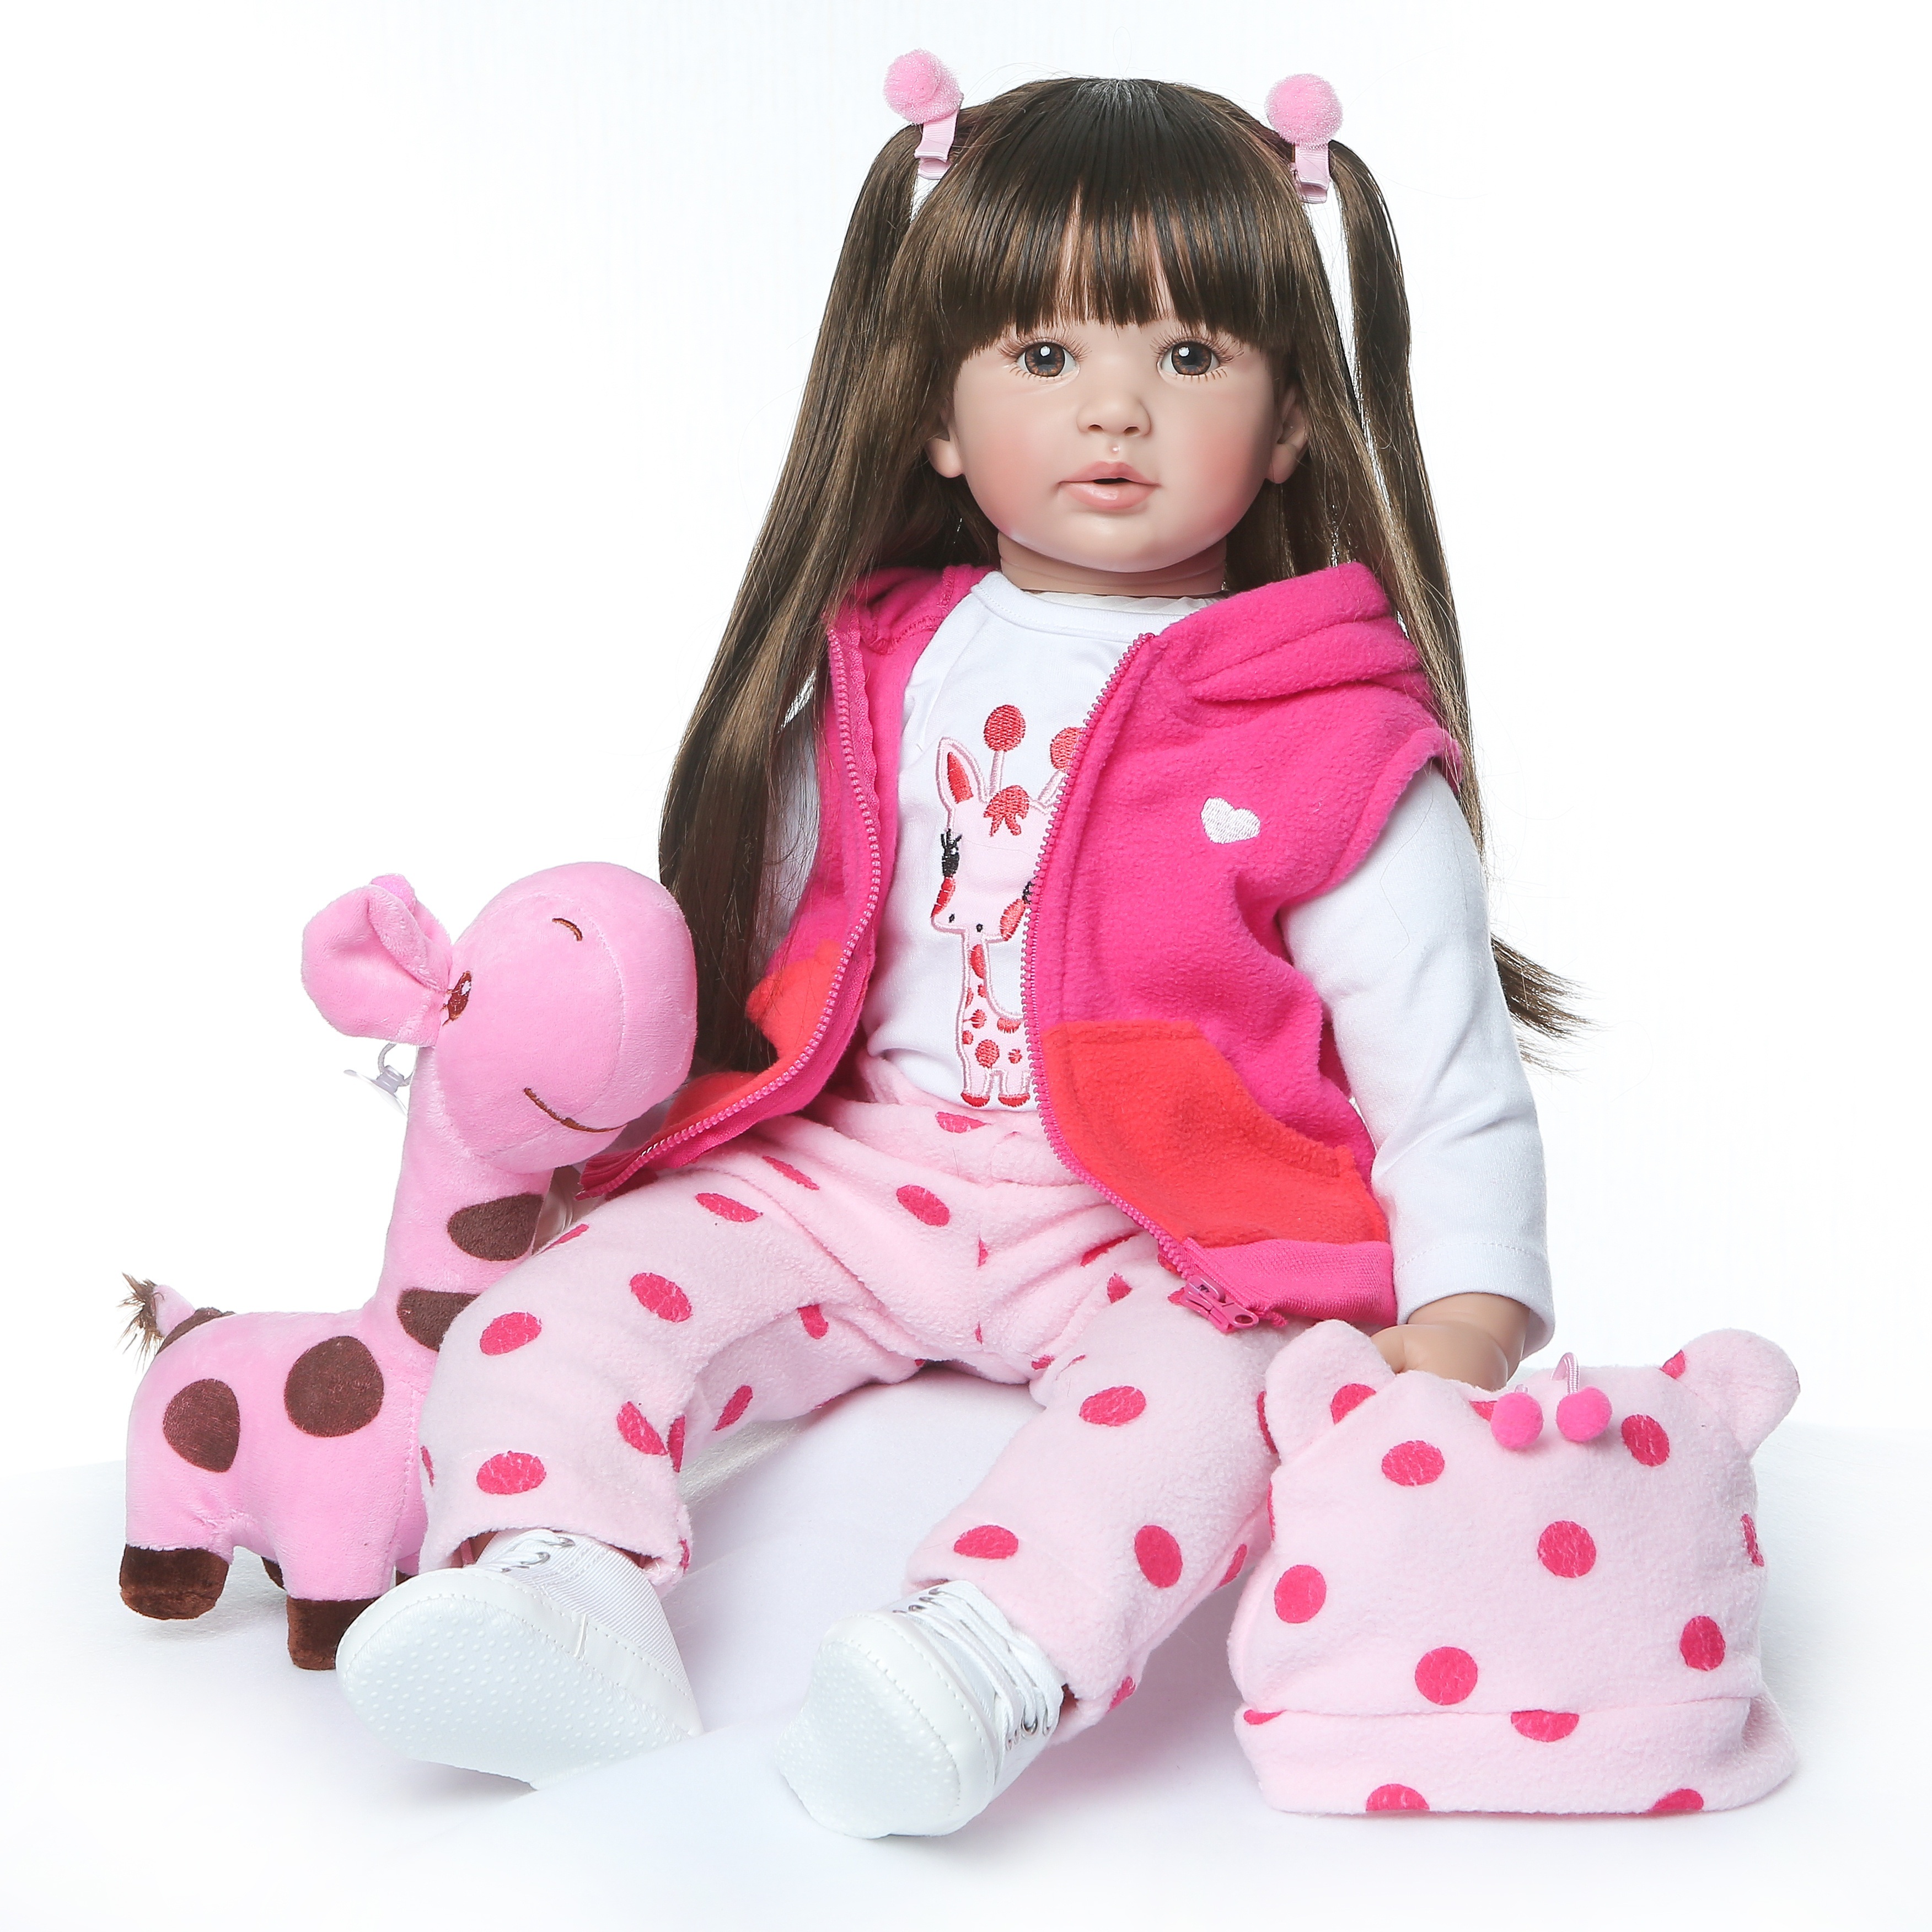 Compra online de Npk 55cm bebê reborn realista, recém-nascido, silicone,  vinil, renascimento, boneca artesanal, presente, bonecas reborn